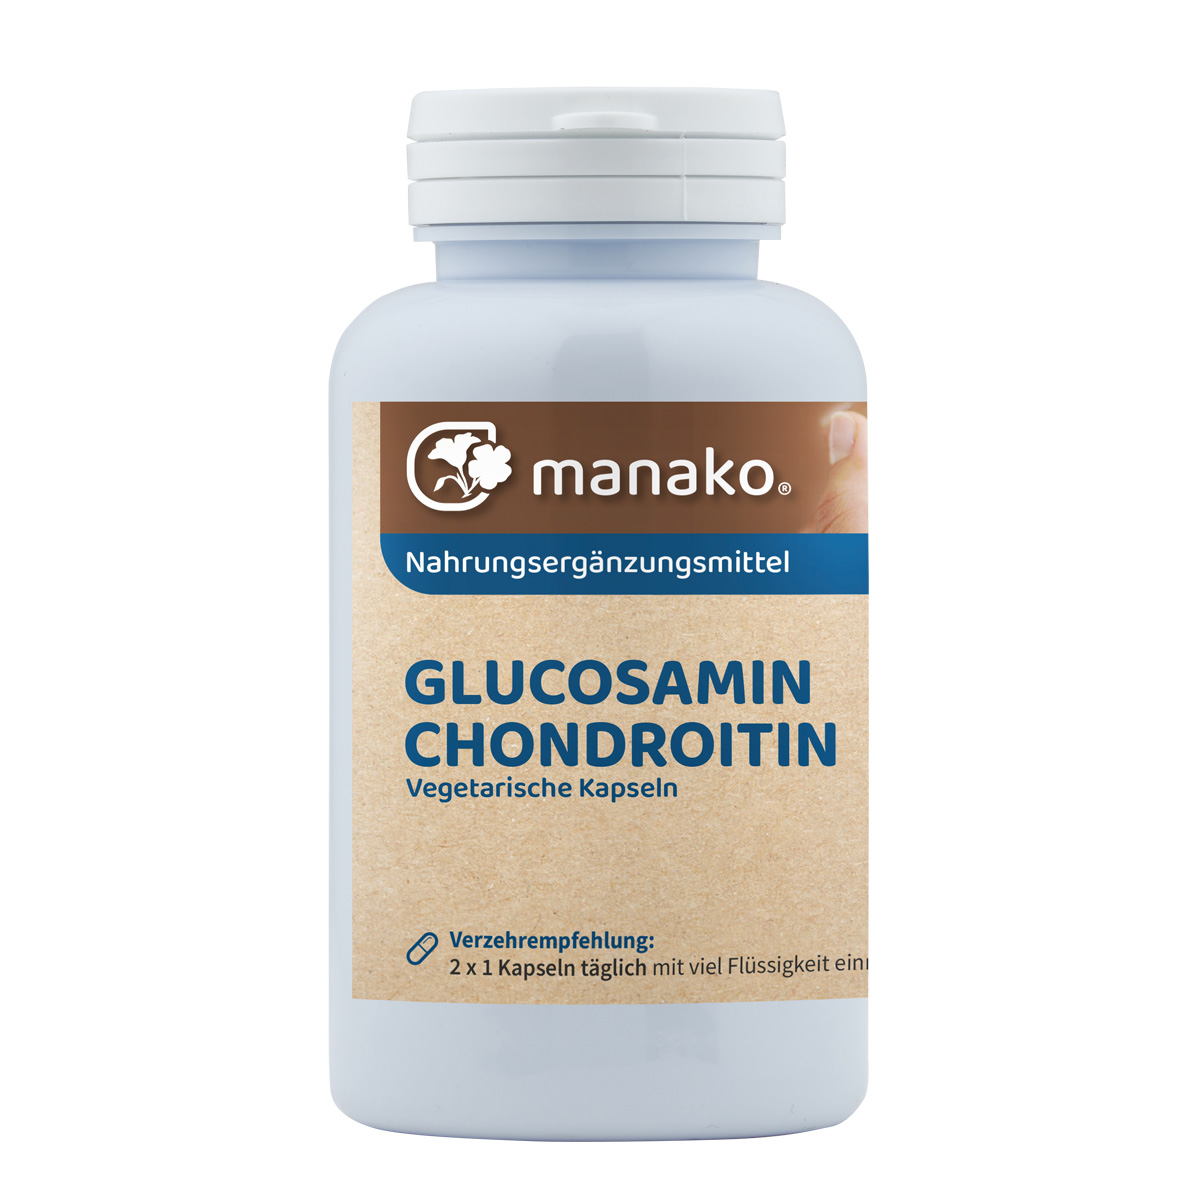 manako Glucosamin und Chondroitin Kapseln, 120 Stück, Dose a 96 g